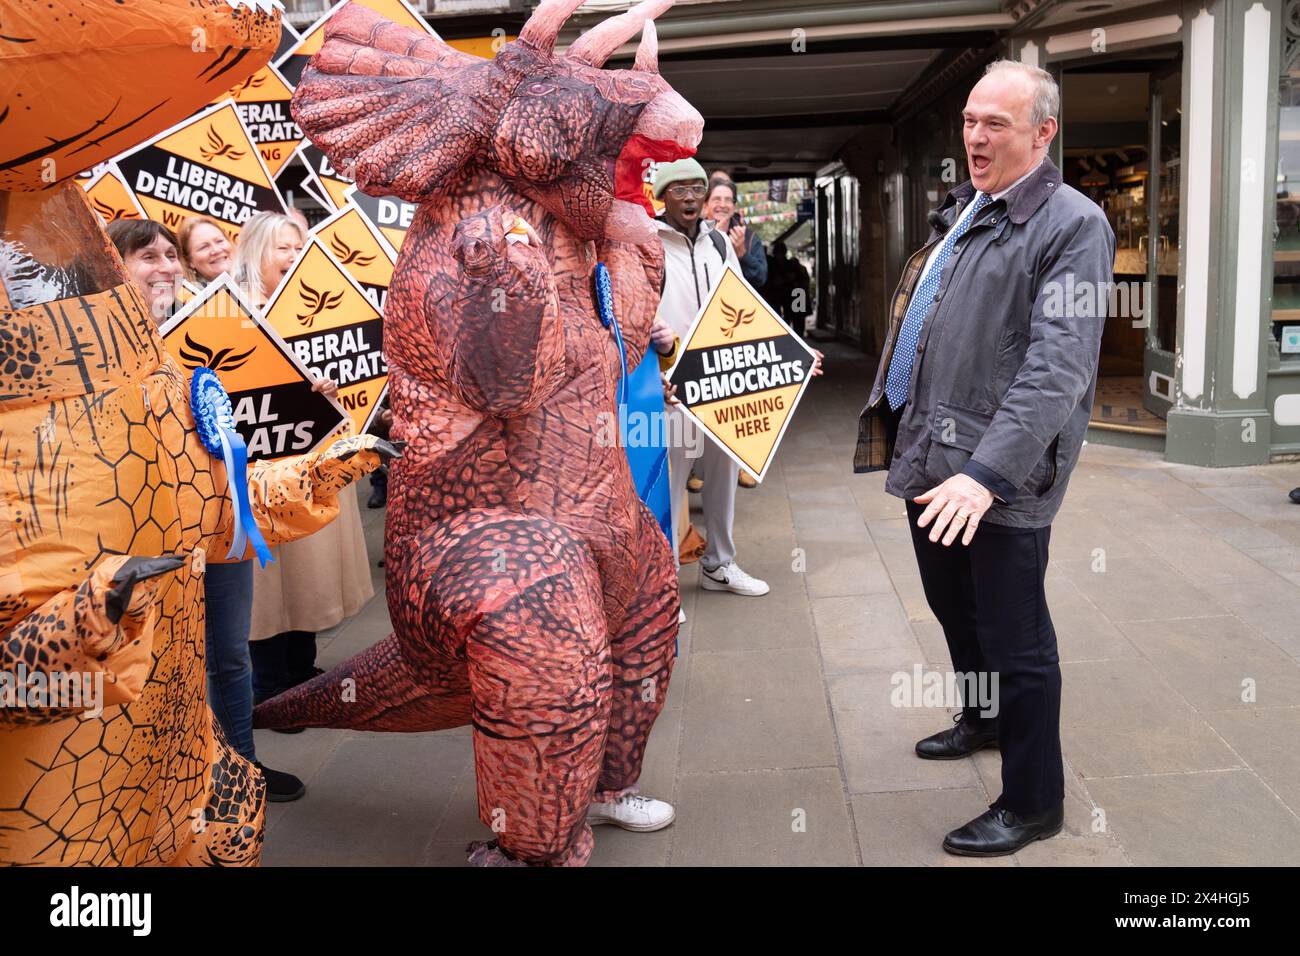 Der Führer der Liberaldemokraten Sir Ed Davey wird von Tory „Dinosauriern“ begrüßt, als er nach den Wahlen in der Kommunalregierung bei einer feierlichen Kundgebung in Winchester ankommt, um sich den lokalen Lib dem-Aktivisten anzuschließen. Bilddatum: Freitag, 3. Mai 2024. Stockfoto